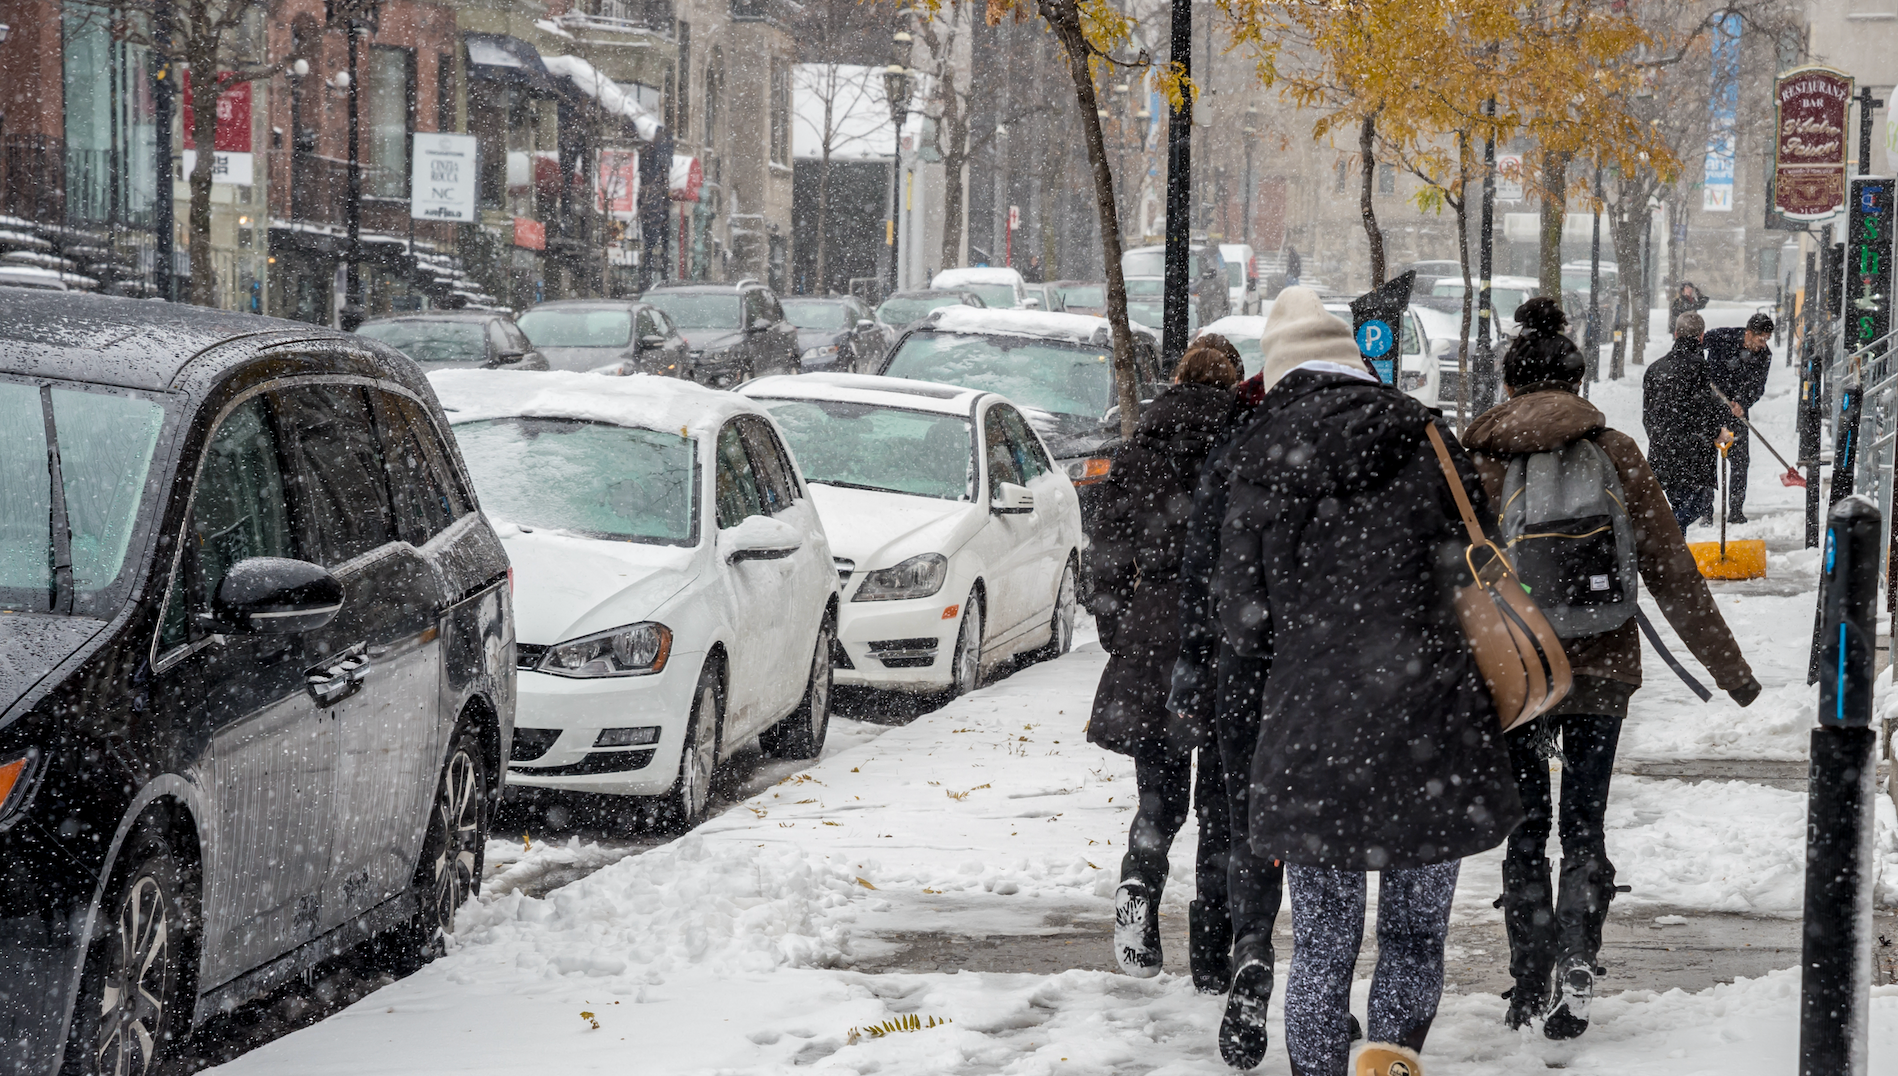 L'hiver va arriver plus tôt que prévu au Québec selon les prévisions et t'es pas prêt